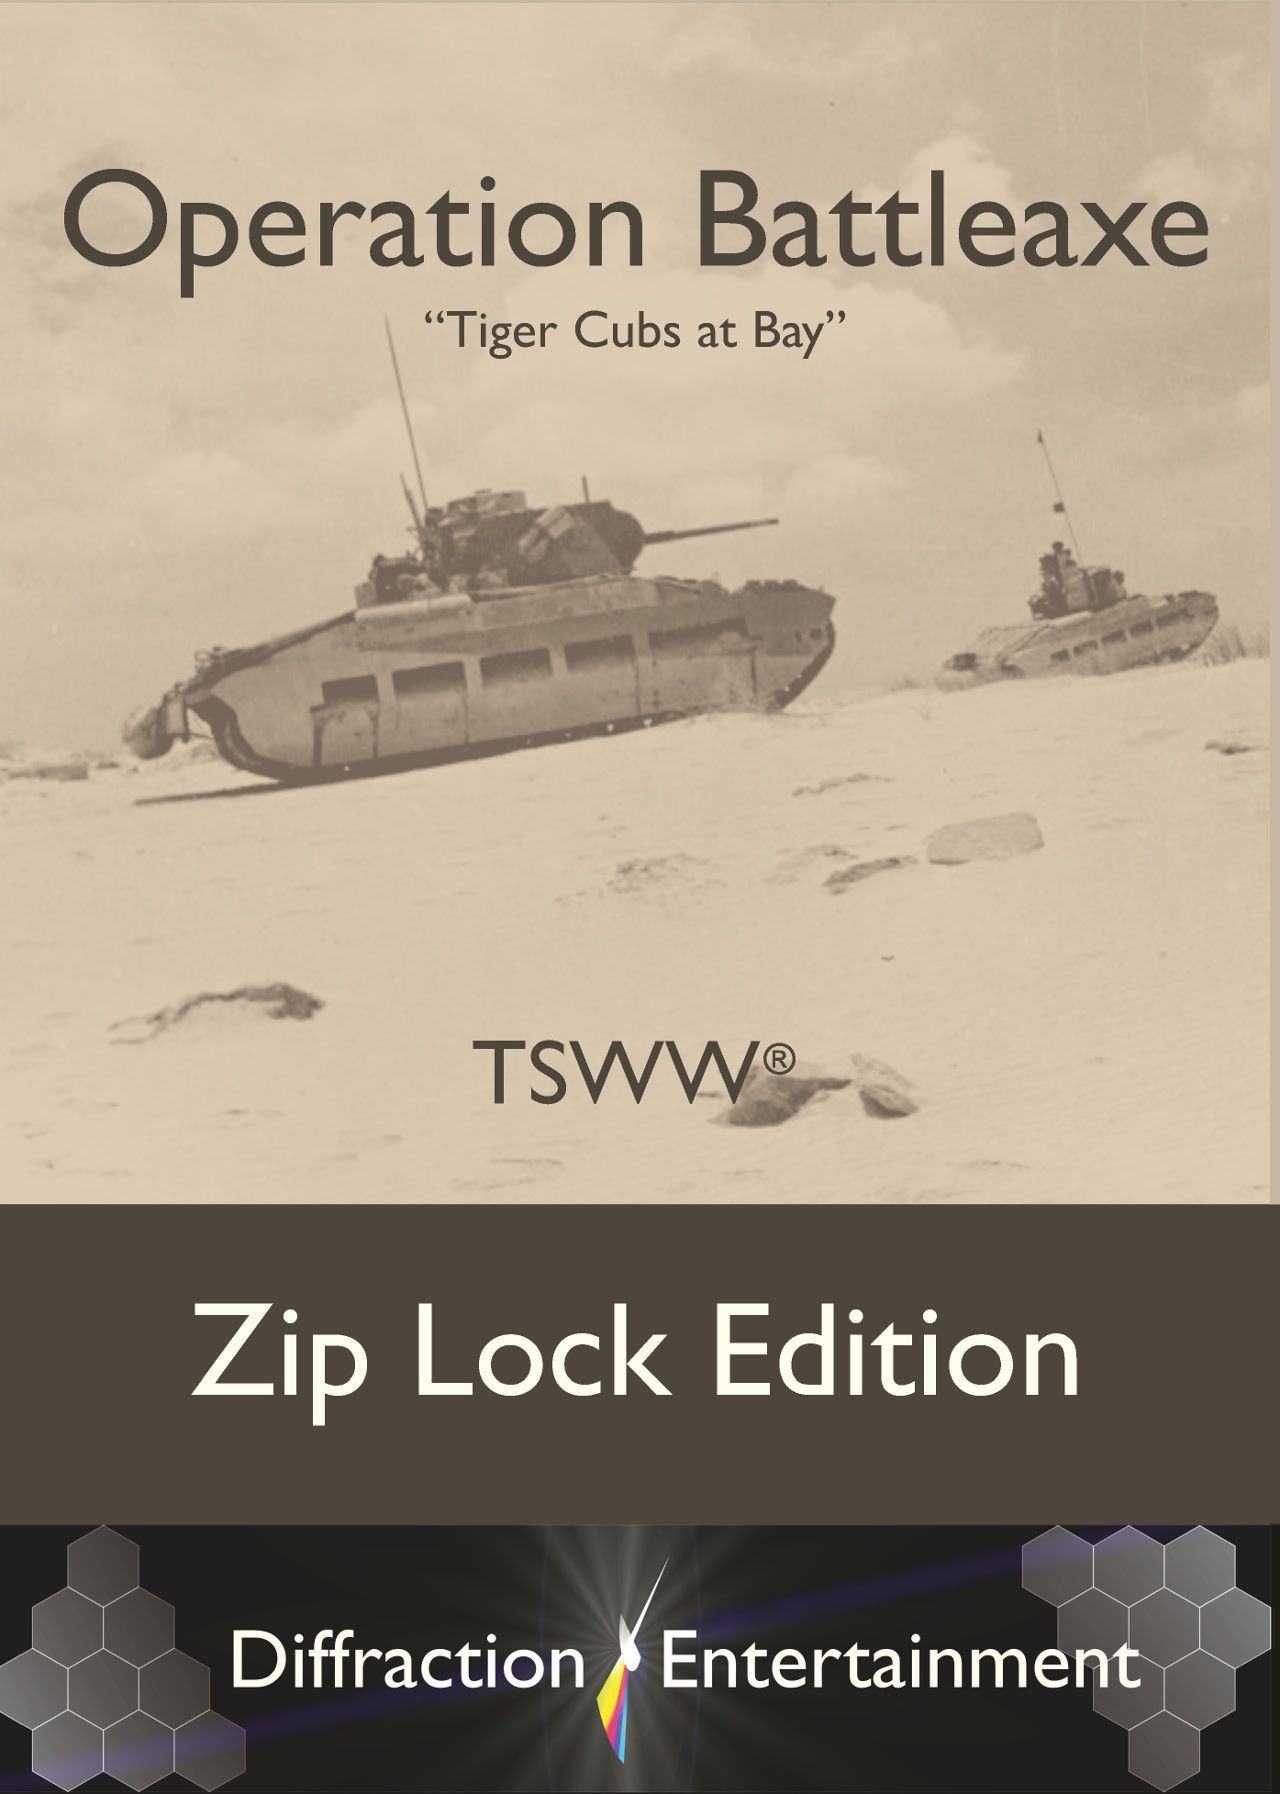 TSWW: Operation Battleaxe